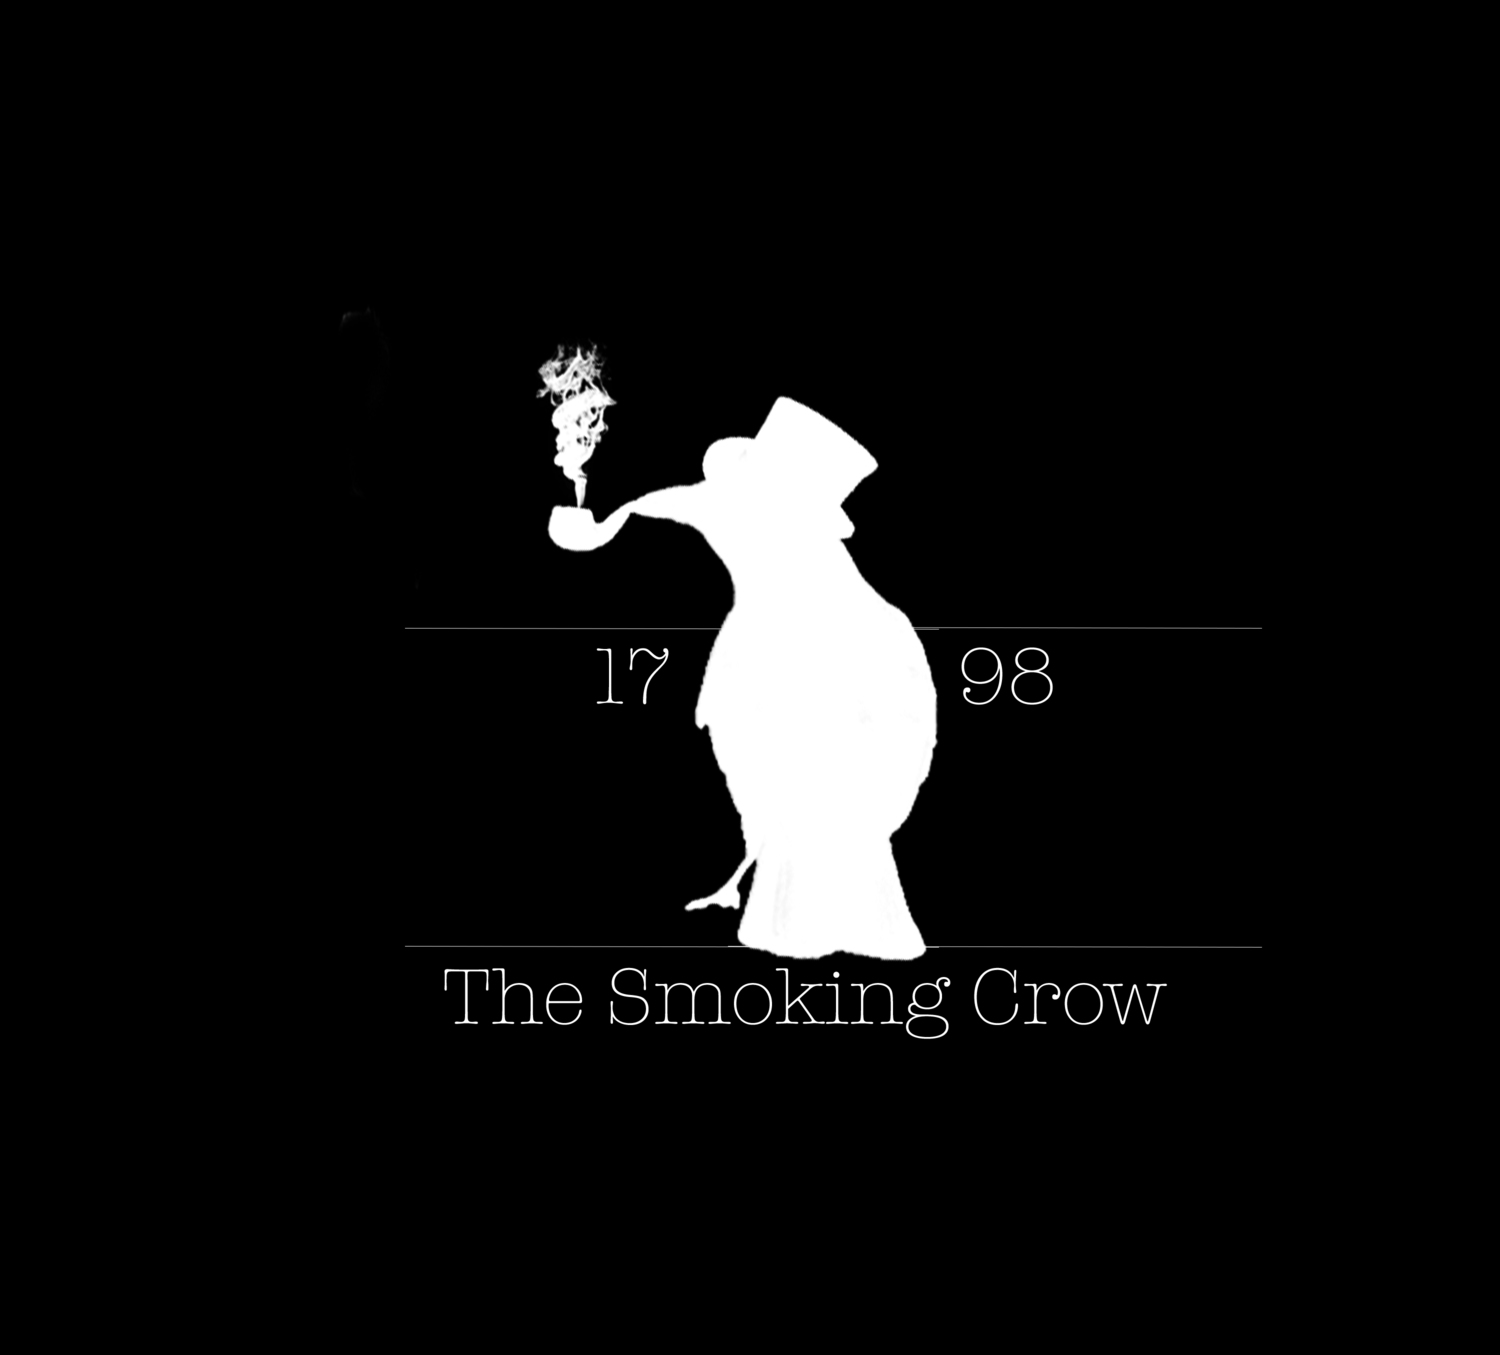 The Smoking Crow